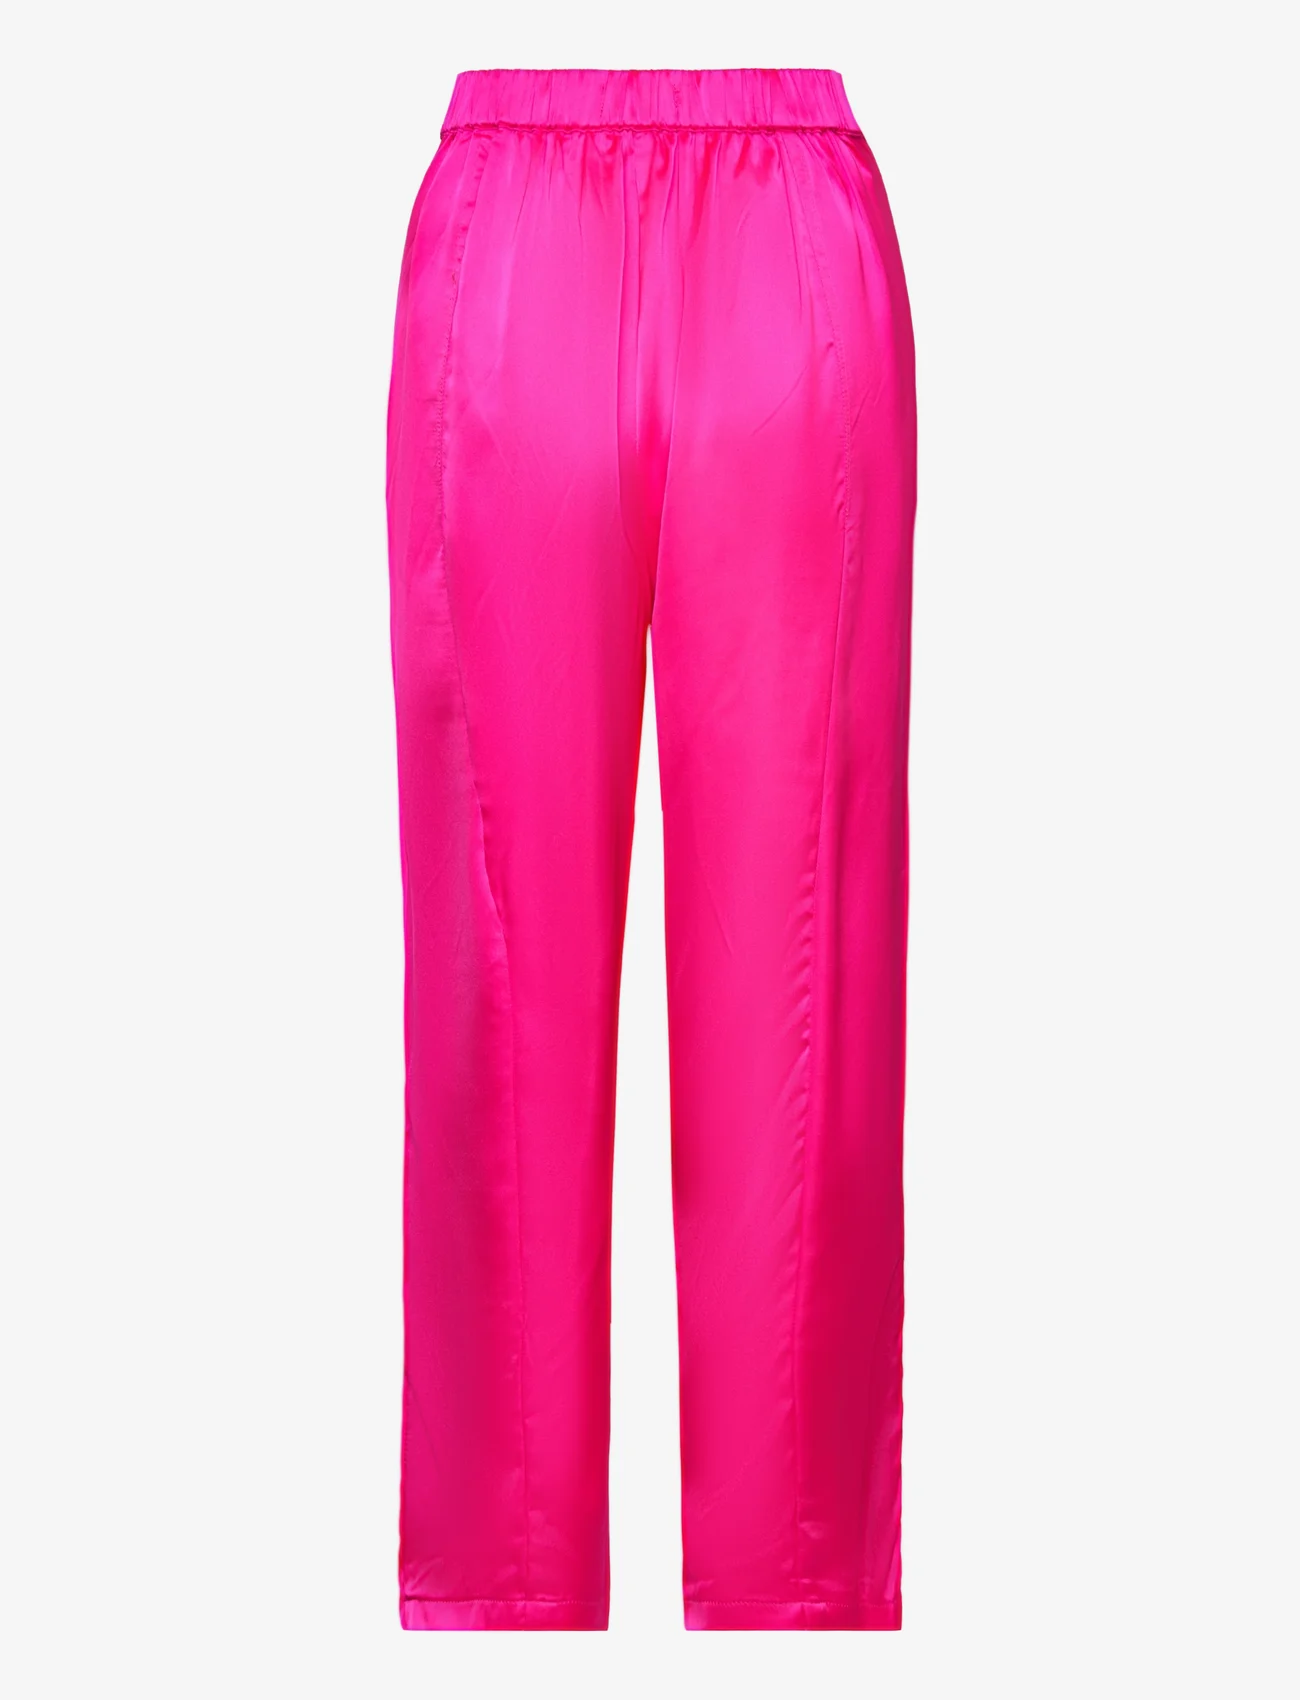 Lollys Laundry - Maisie Pants - sirge säärega püksid - pink - 1